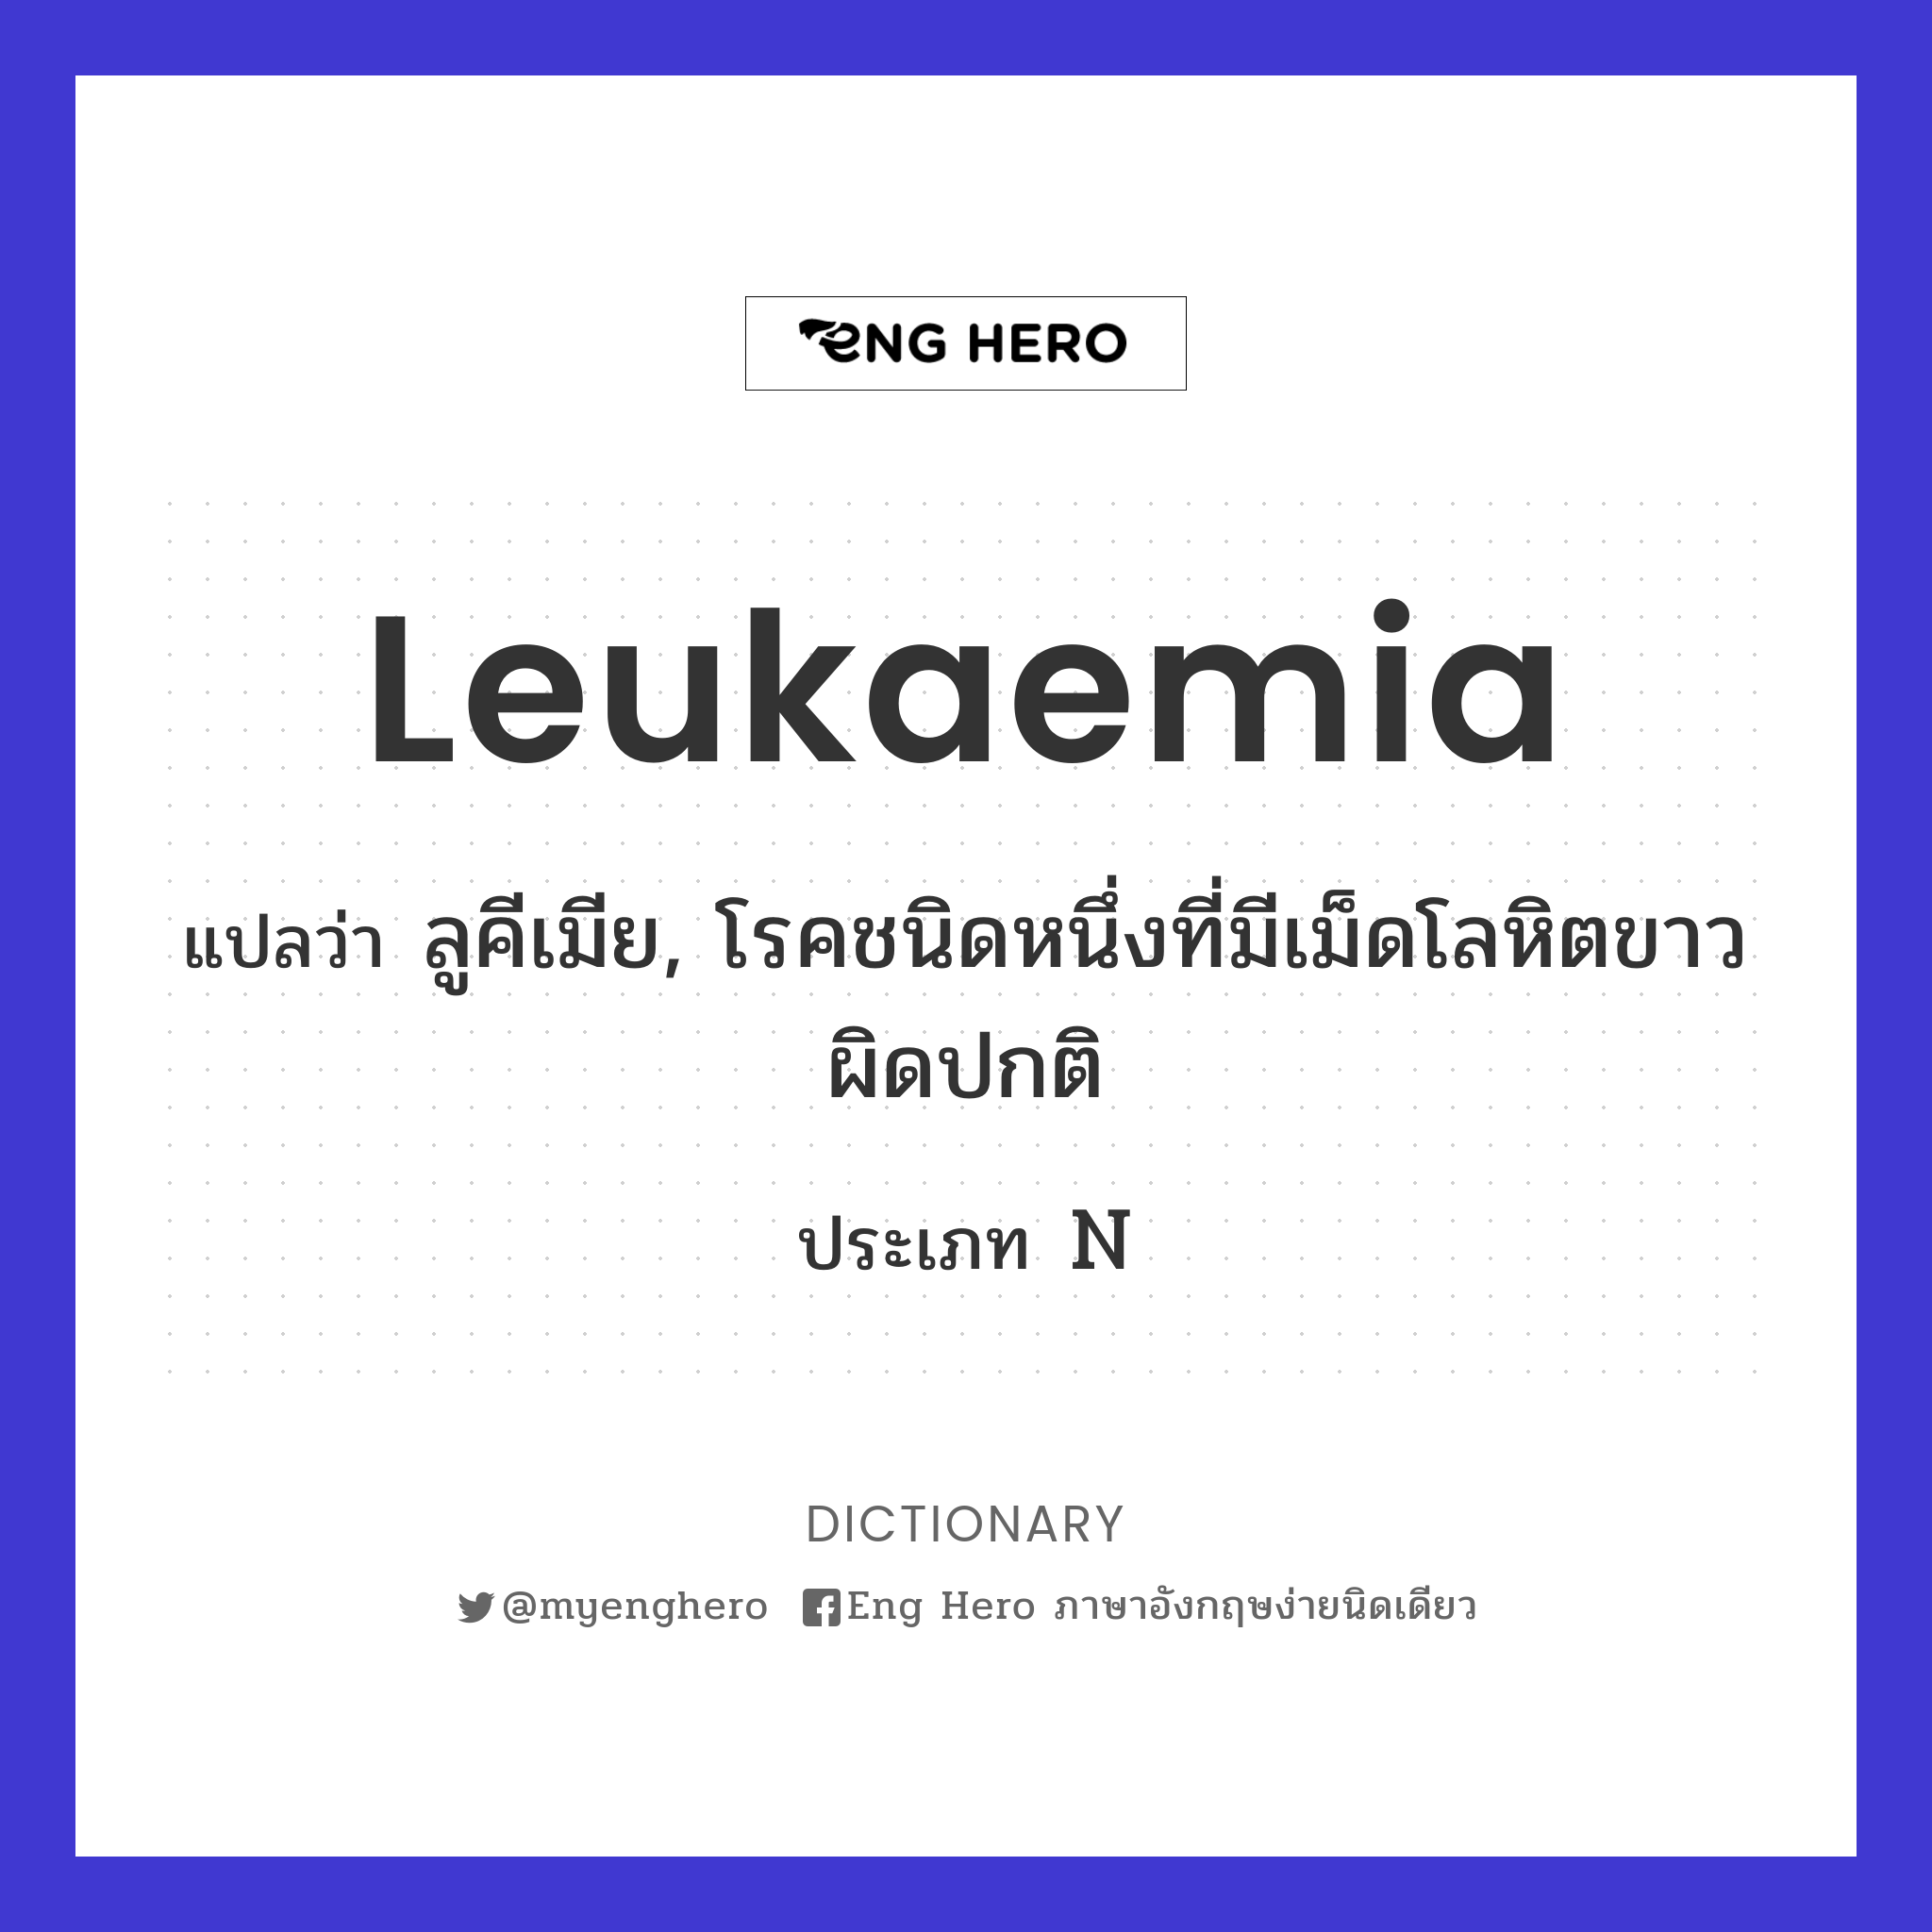 leukaemia